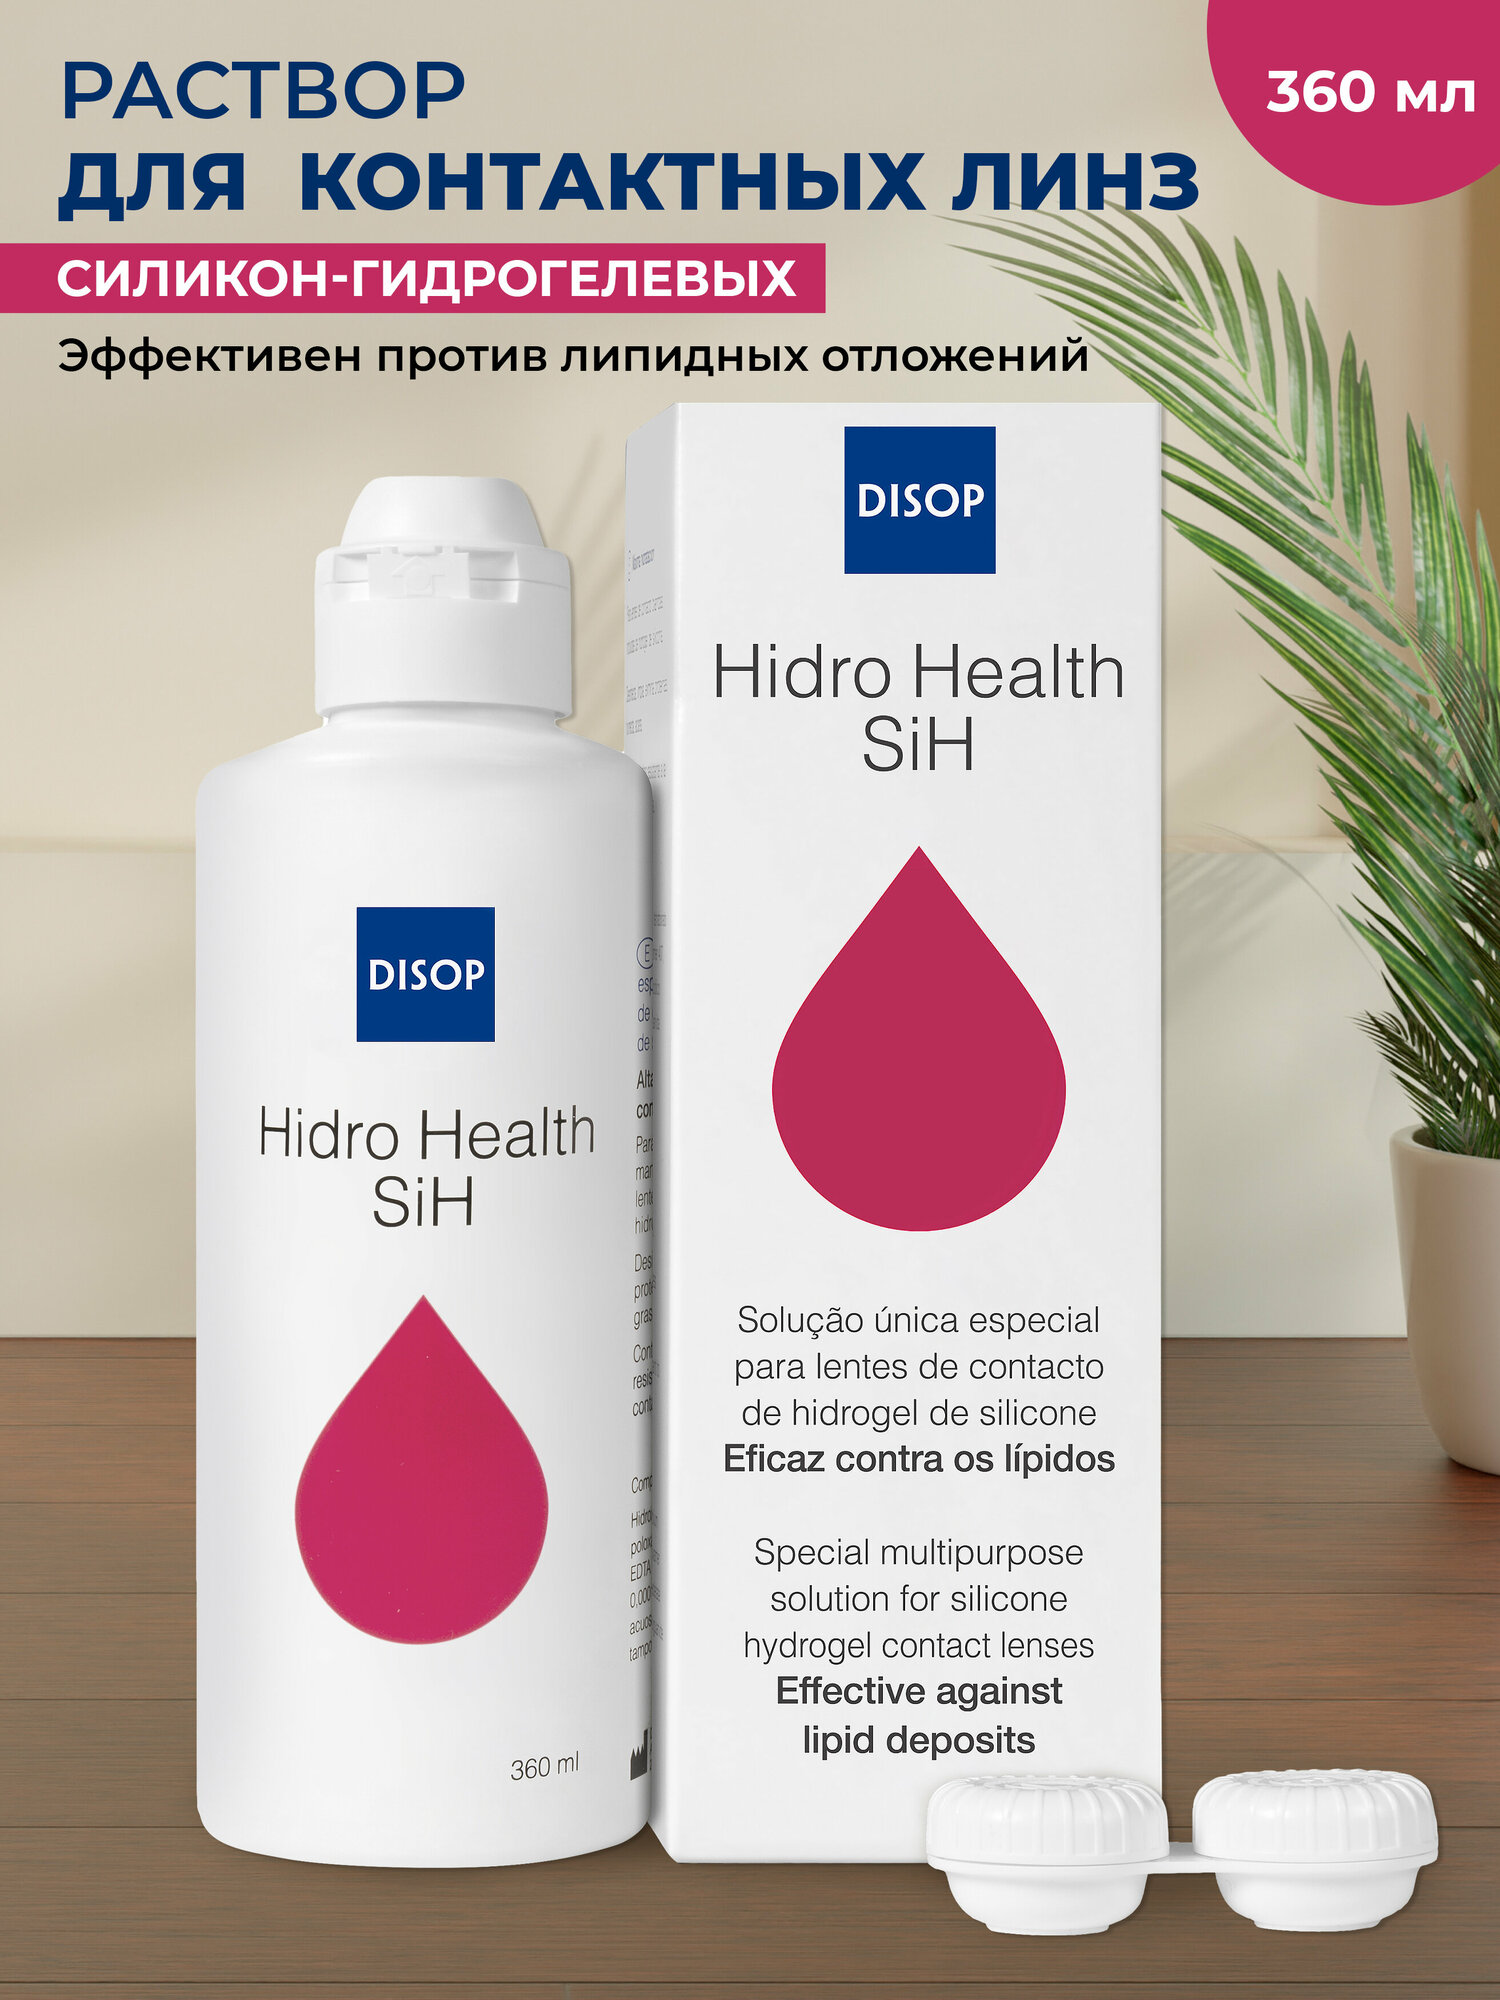 "Disop Hidro Health SiH - раствор для контактных линз с гиалуроновой кислотой и контейнером